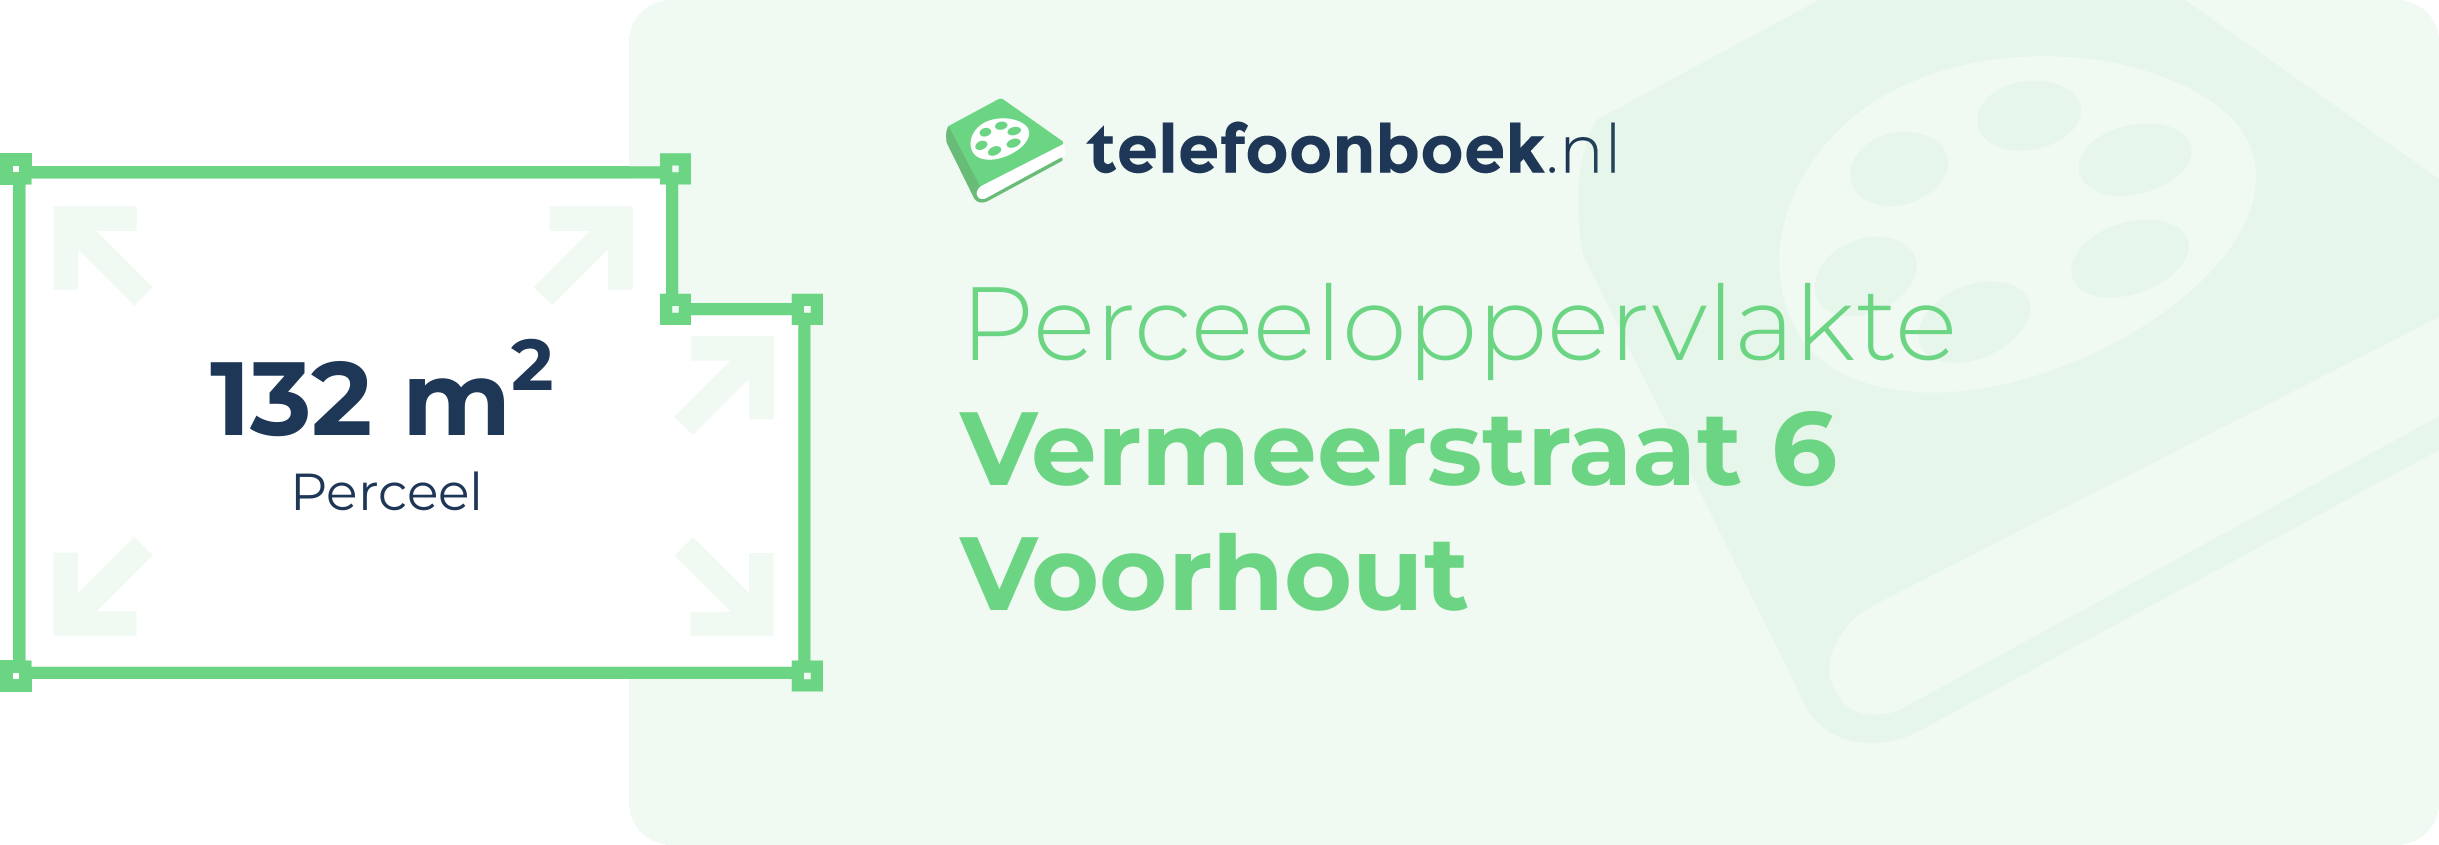 Perceeloppervlakte Vermeerstraat 6 Voorhout